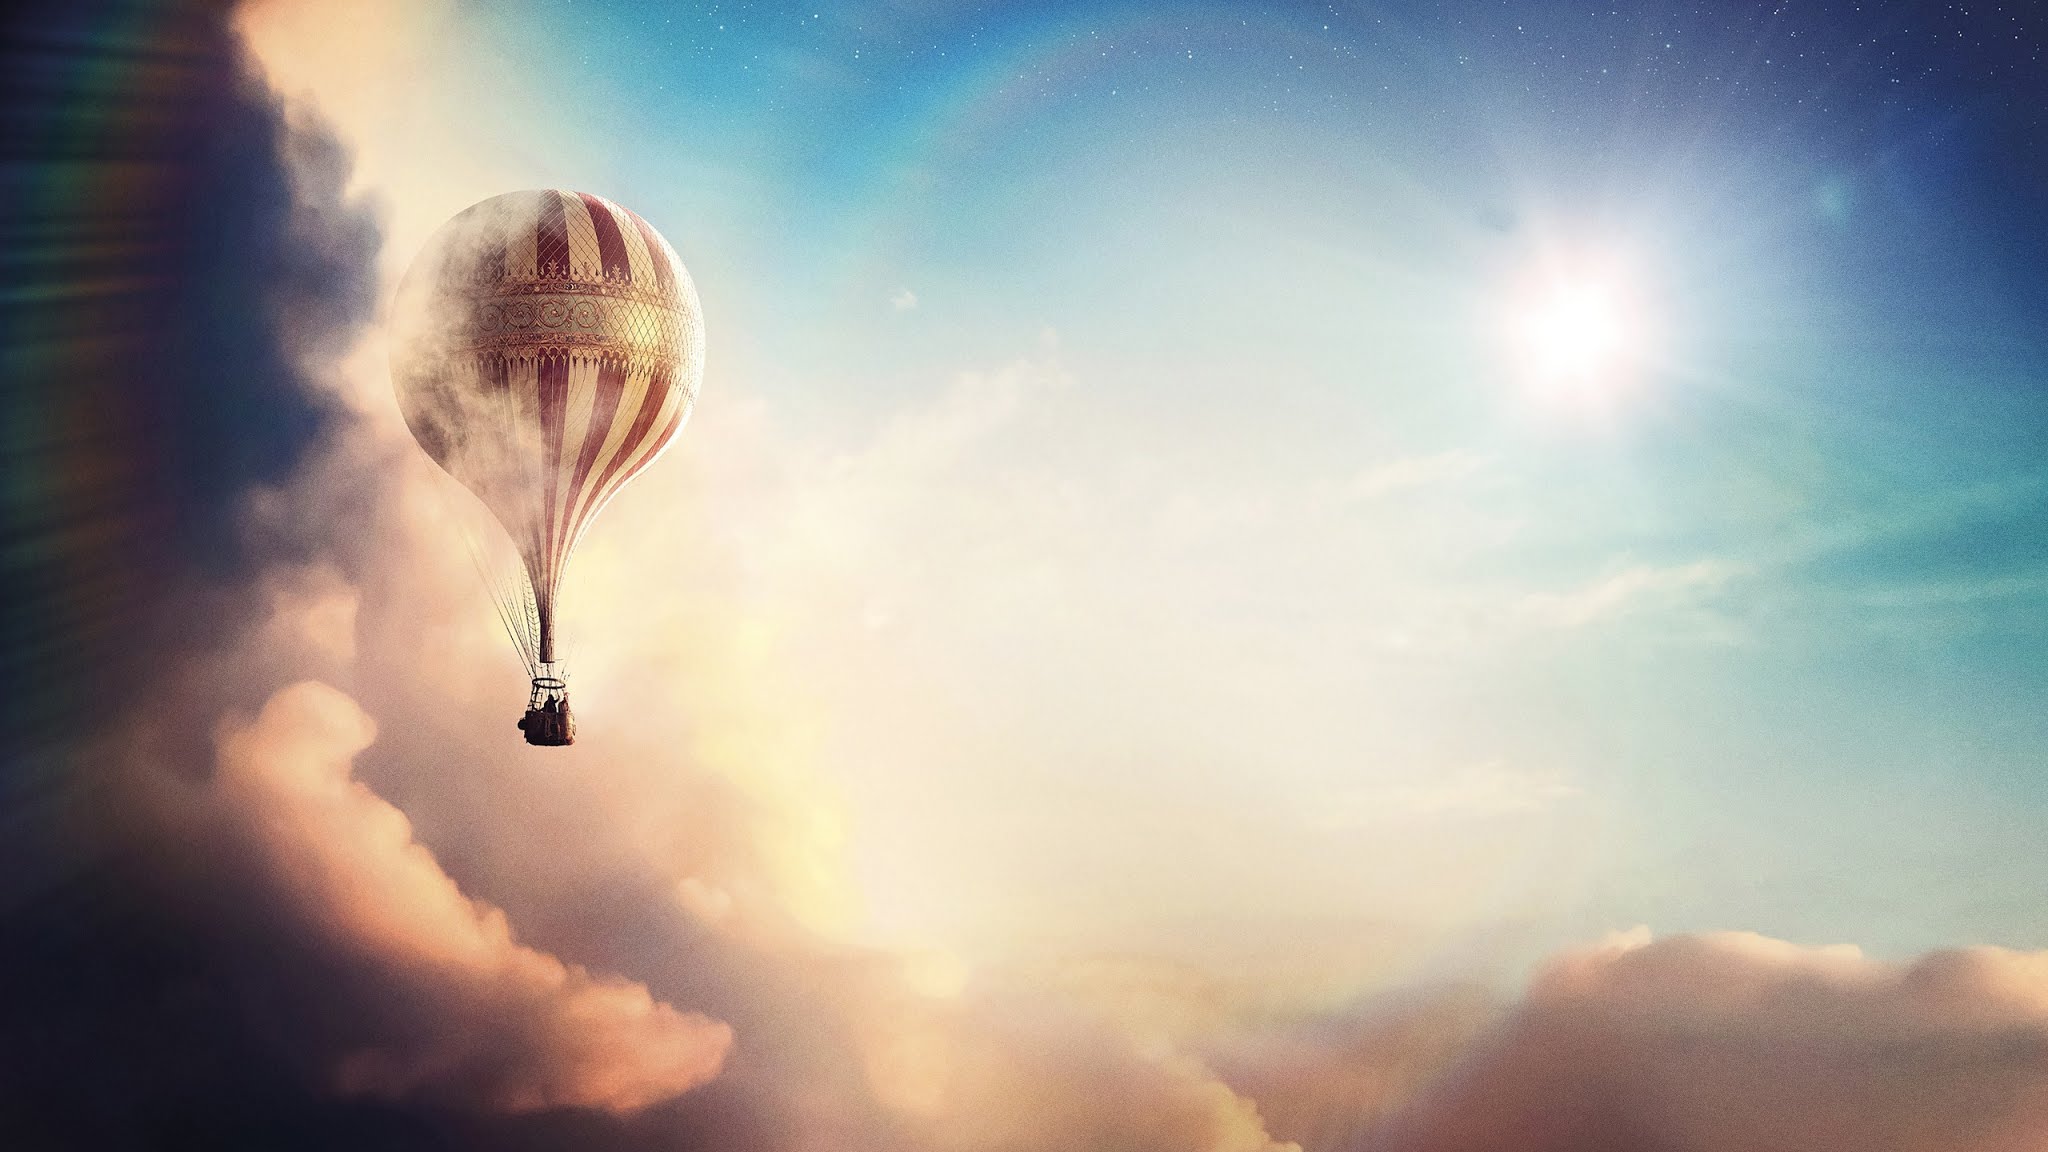 Fantasy Hot Air Balloon Wallpaper - Aeronauts Poster - HD Wallpaper 